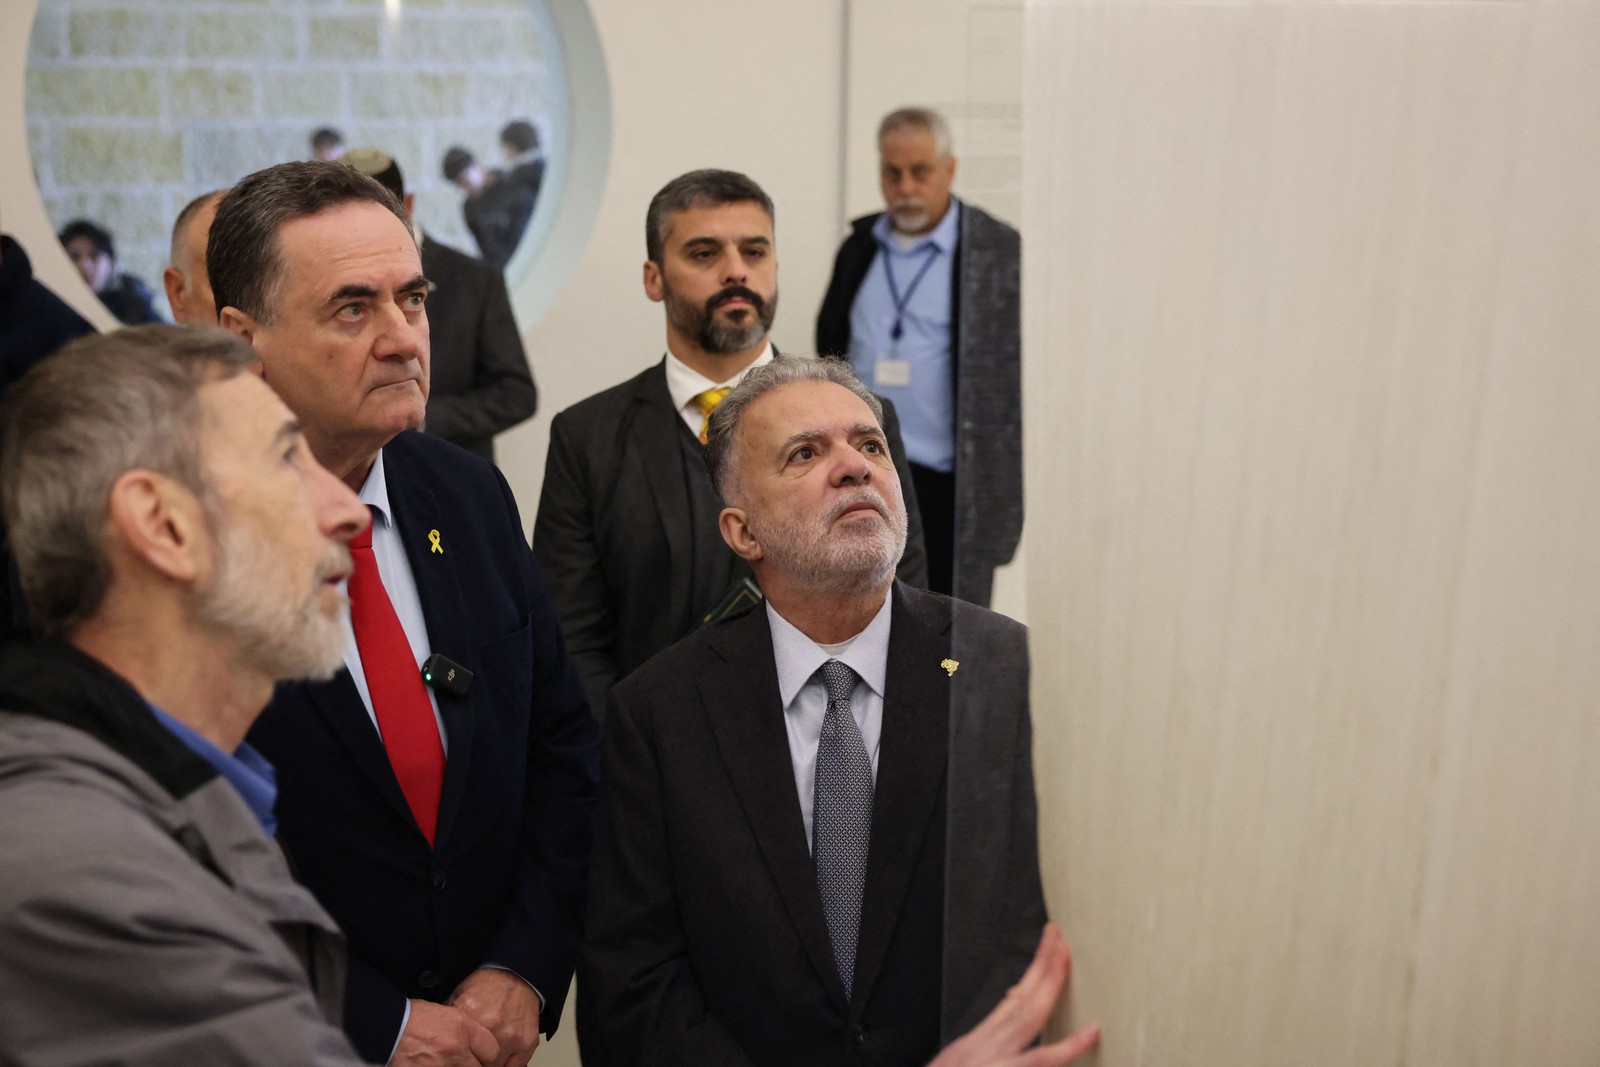 Diante das câmeras, Katz afirmou que Lula não é bem-vindo em Israel. — Foto: AHMAD GHARABLI